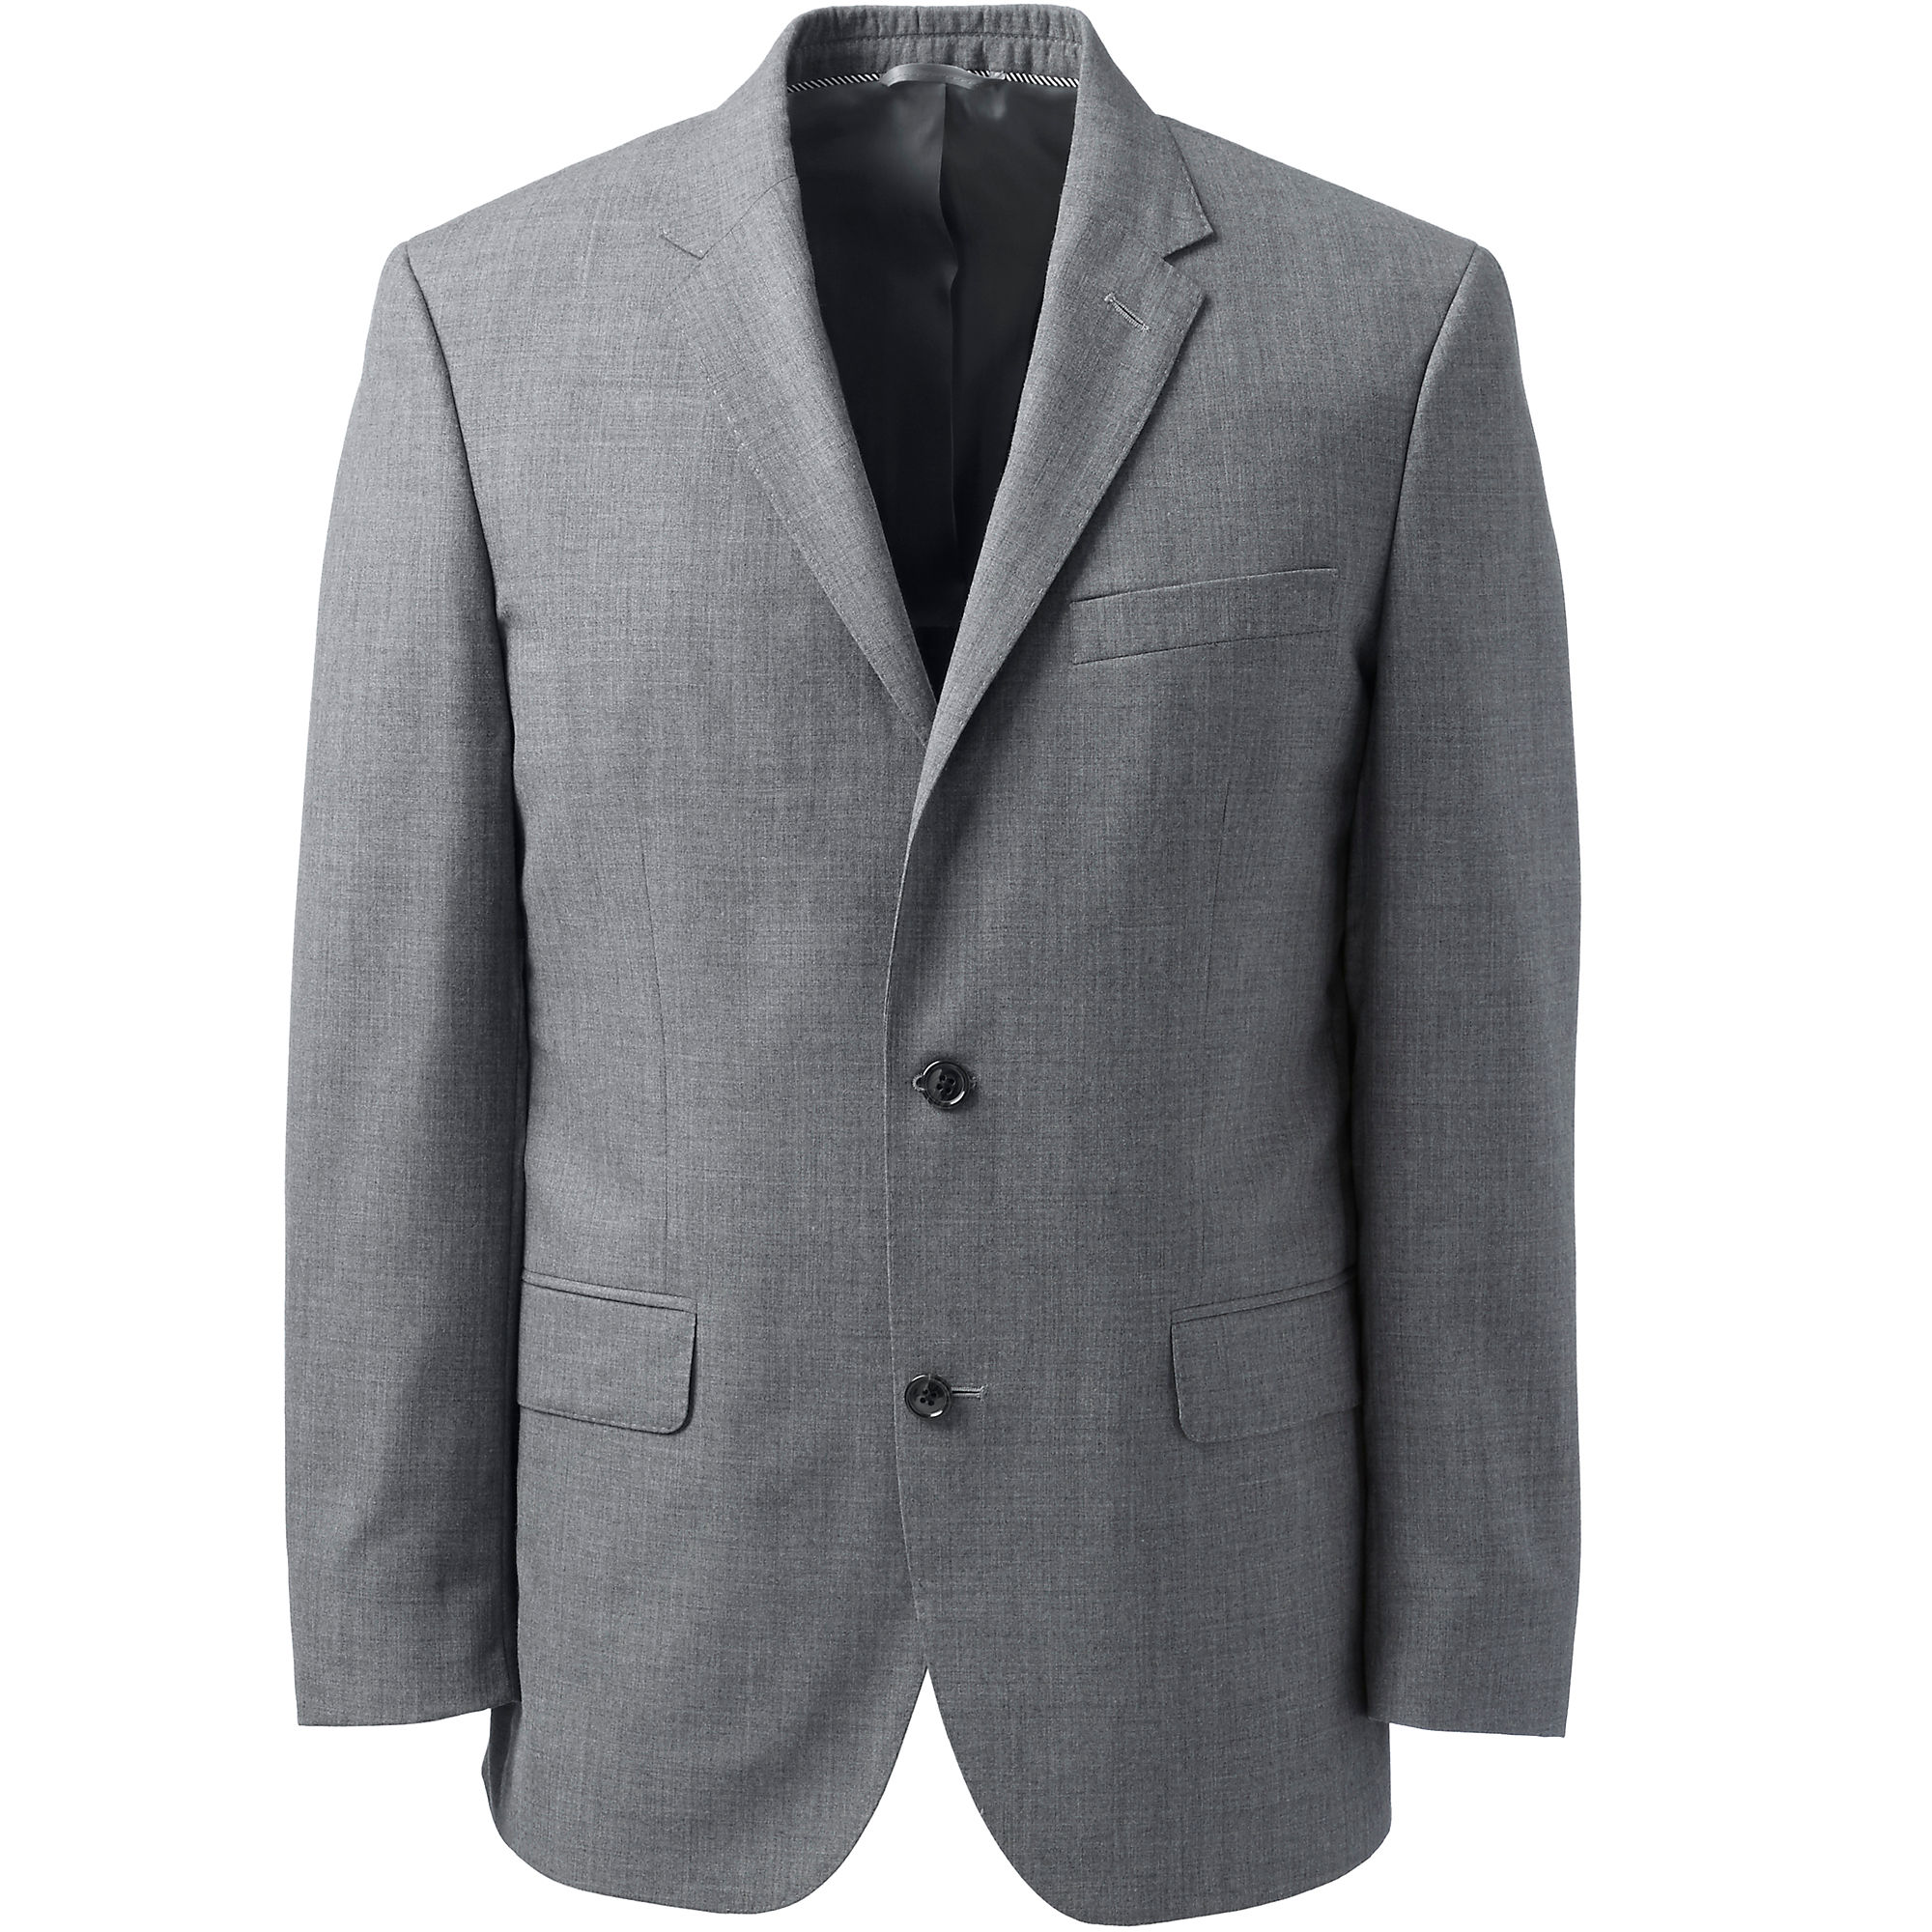 Lands' End Men's Slim Fit Suit Coat